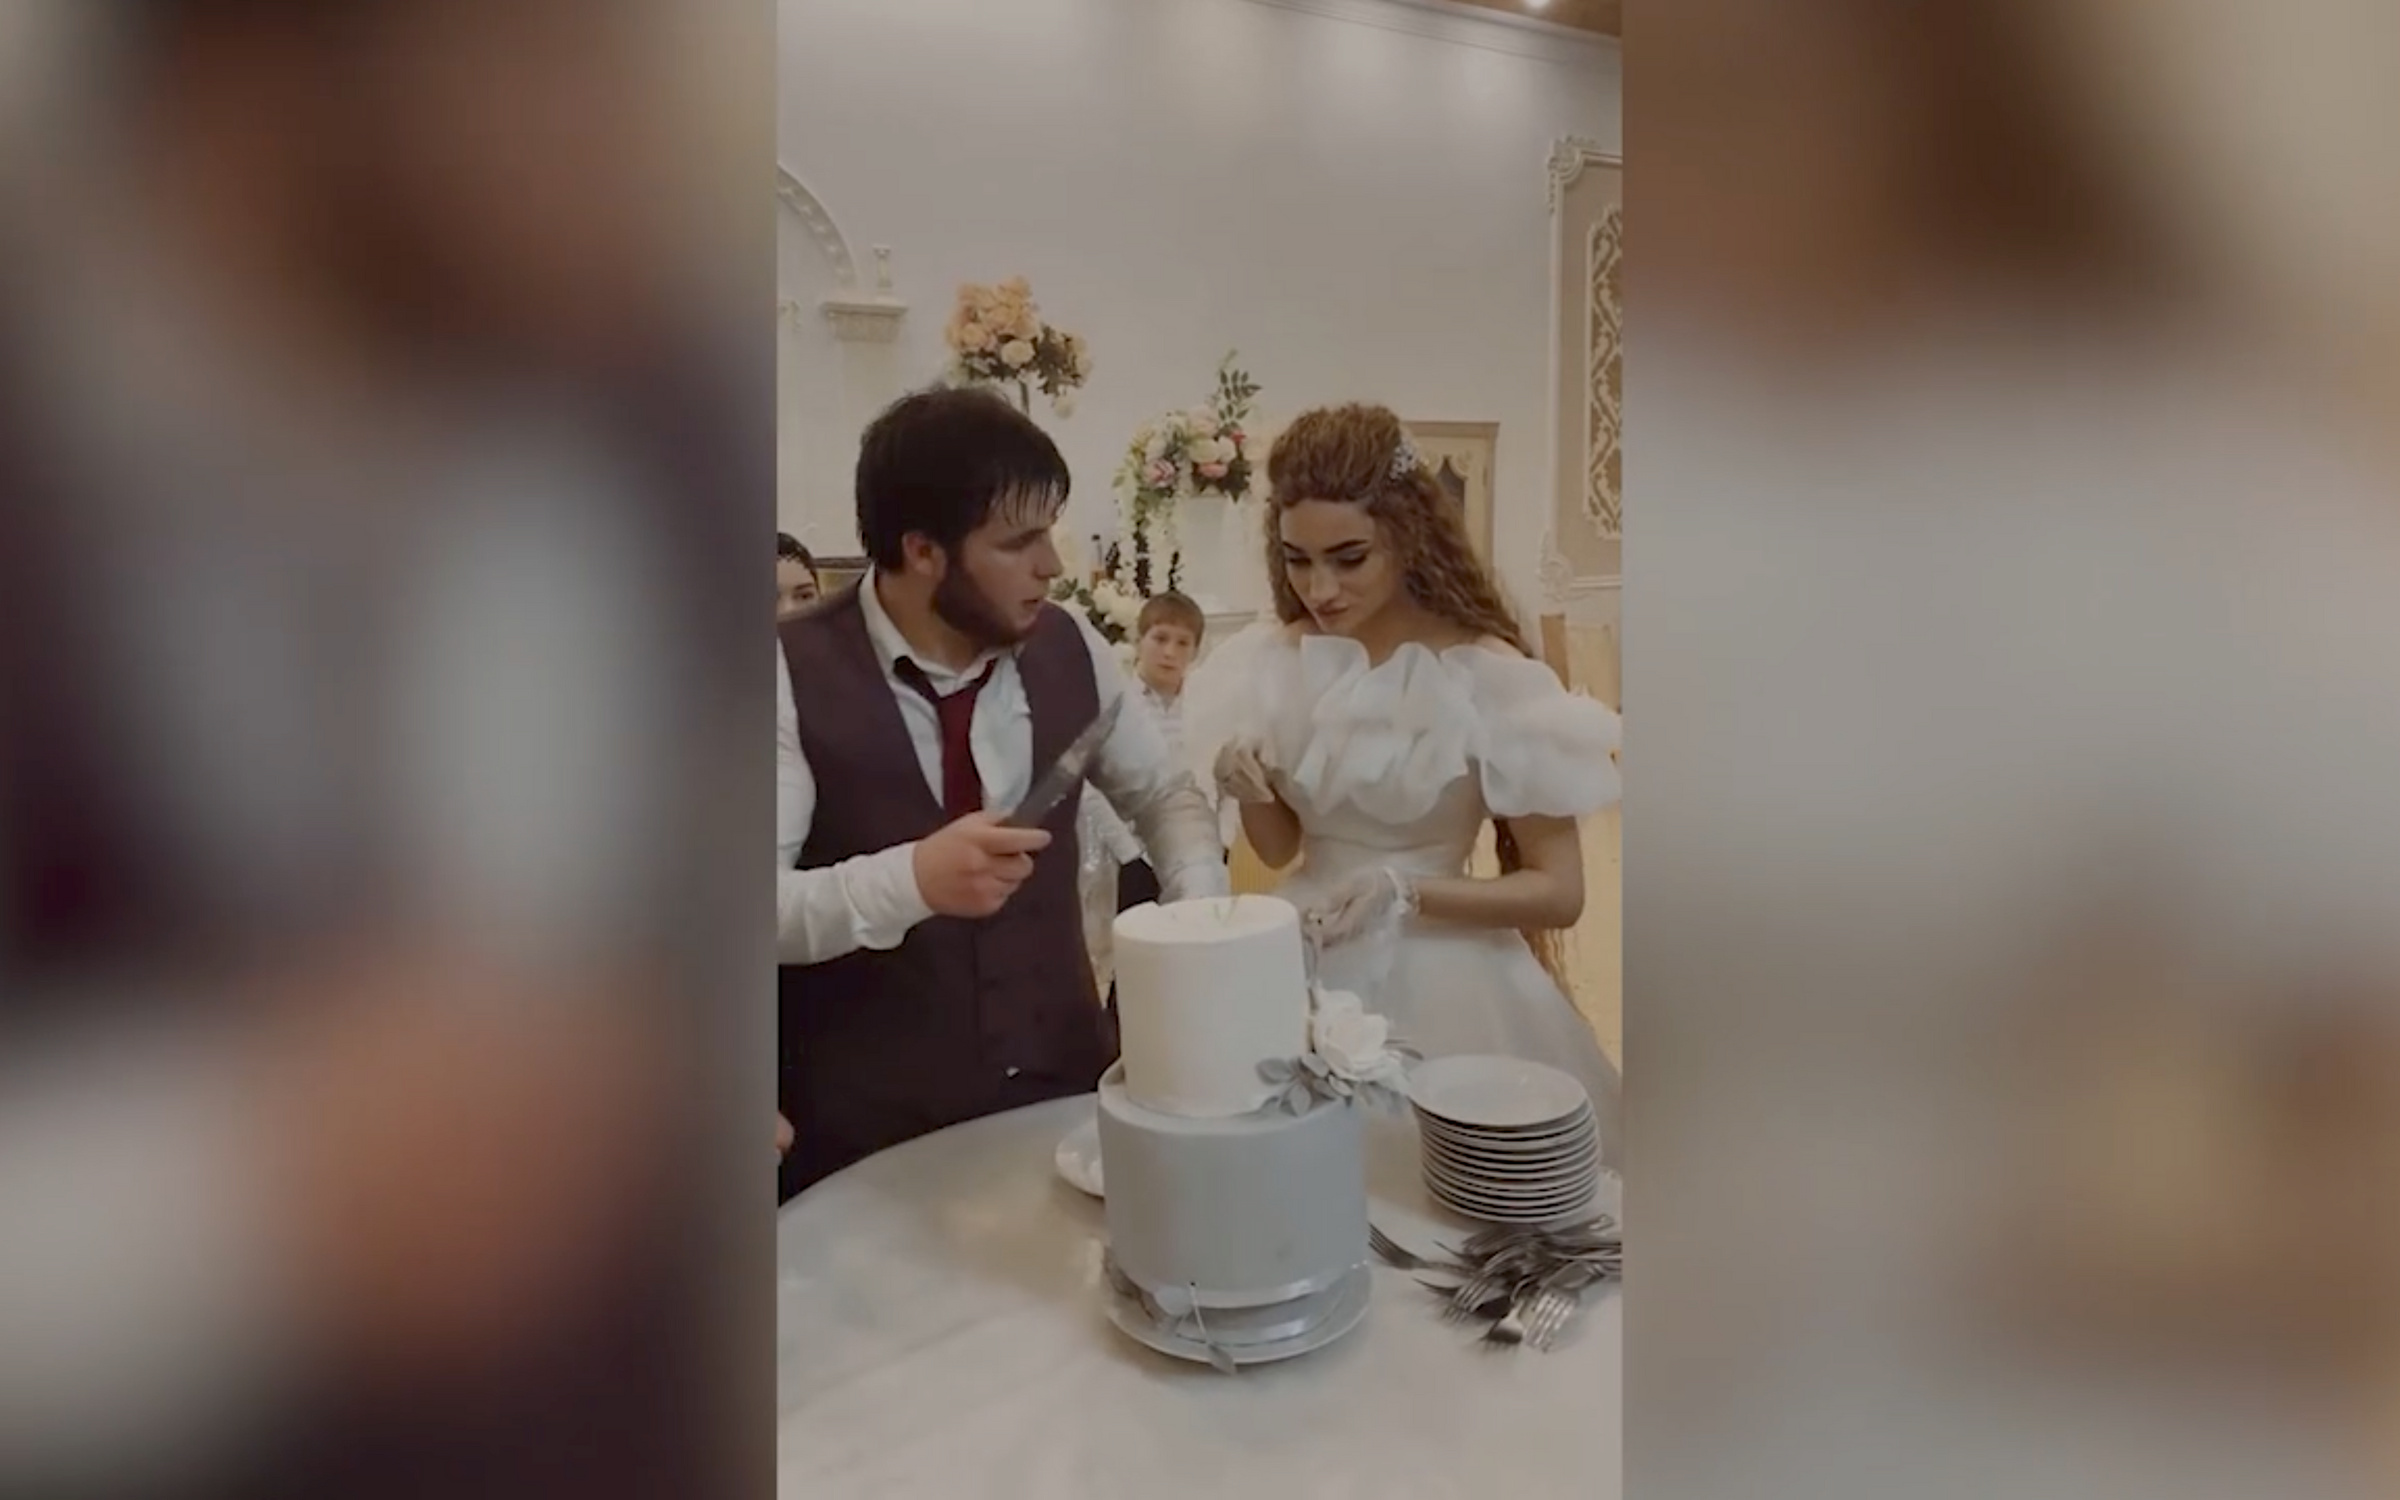 Видео с разрезанием торта на свадьбе заставило пользователей переживать за  невесту